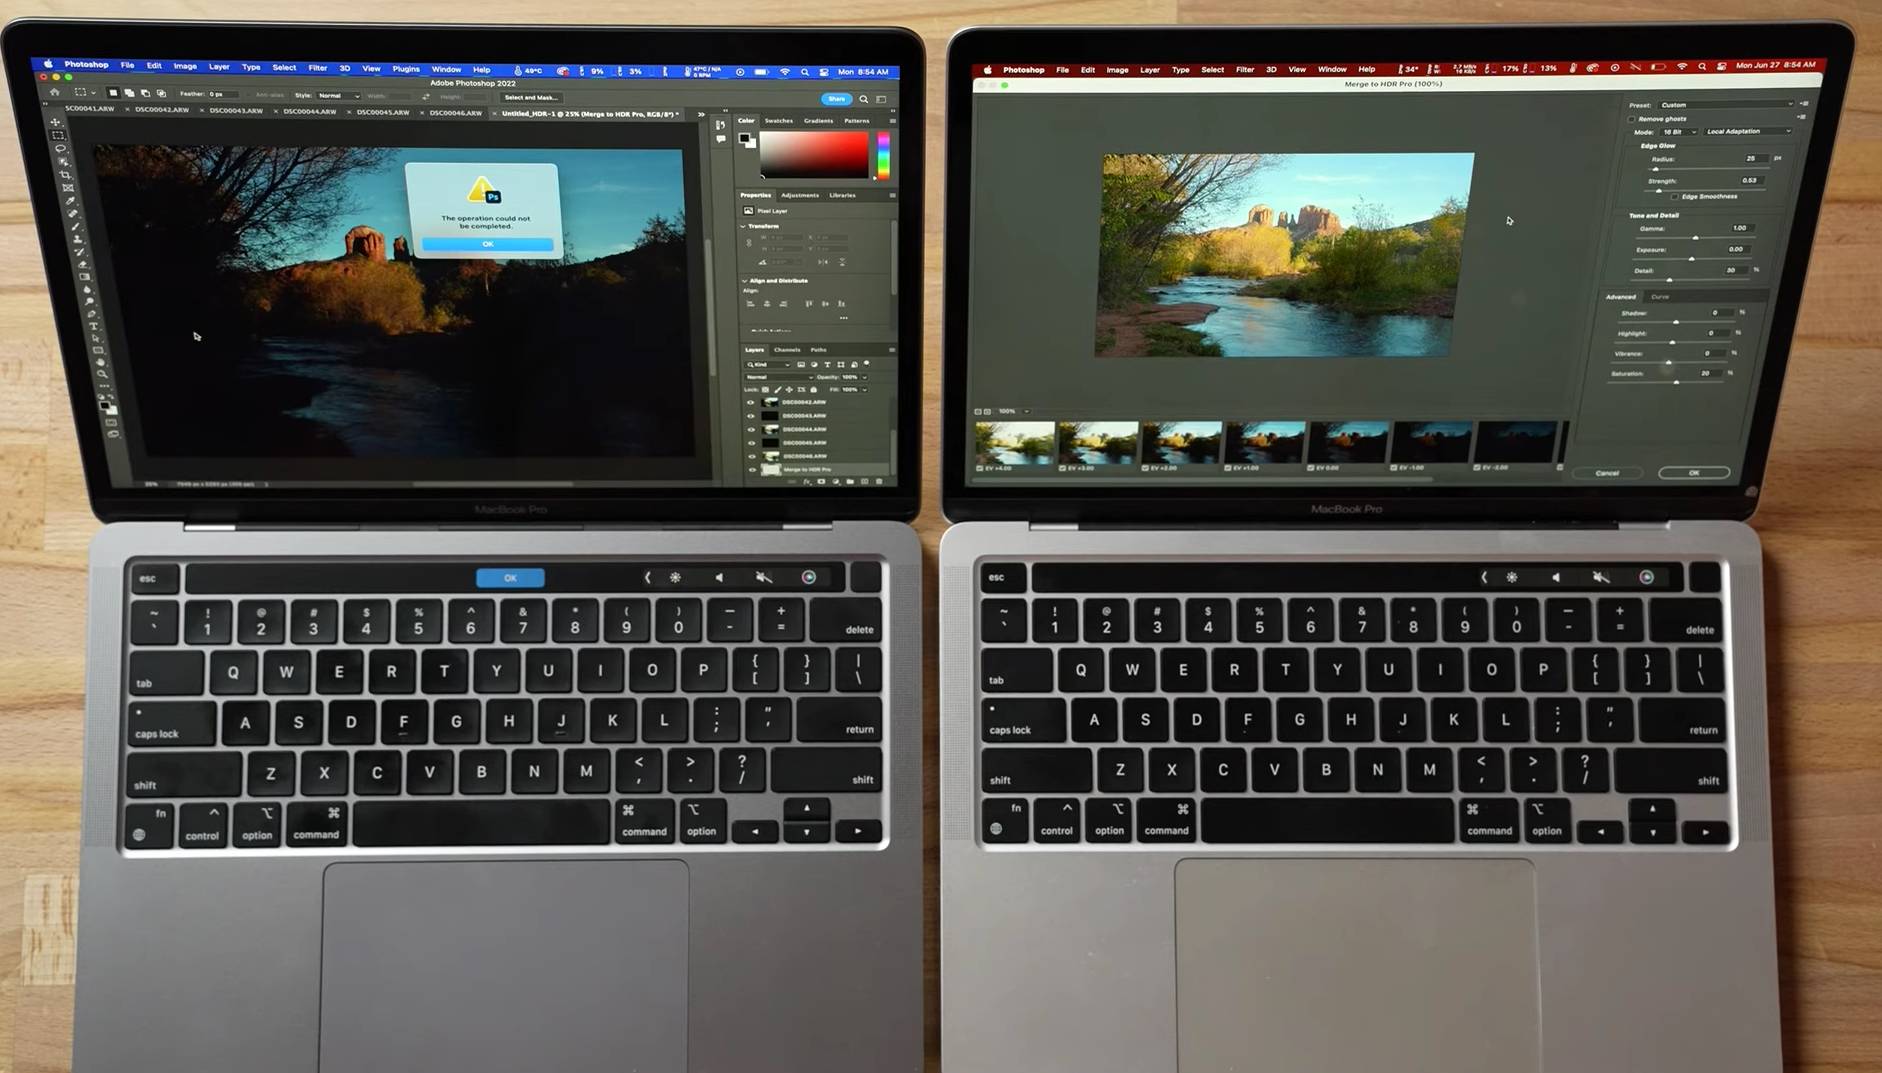 Xnip2022 06 28 17 40 55 - La versione mendicante del disco rigido M2 MacBook Pro è dimezzata, in pratica dicendo addio alla produttività